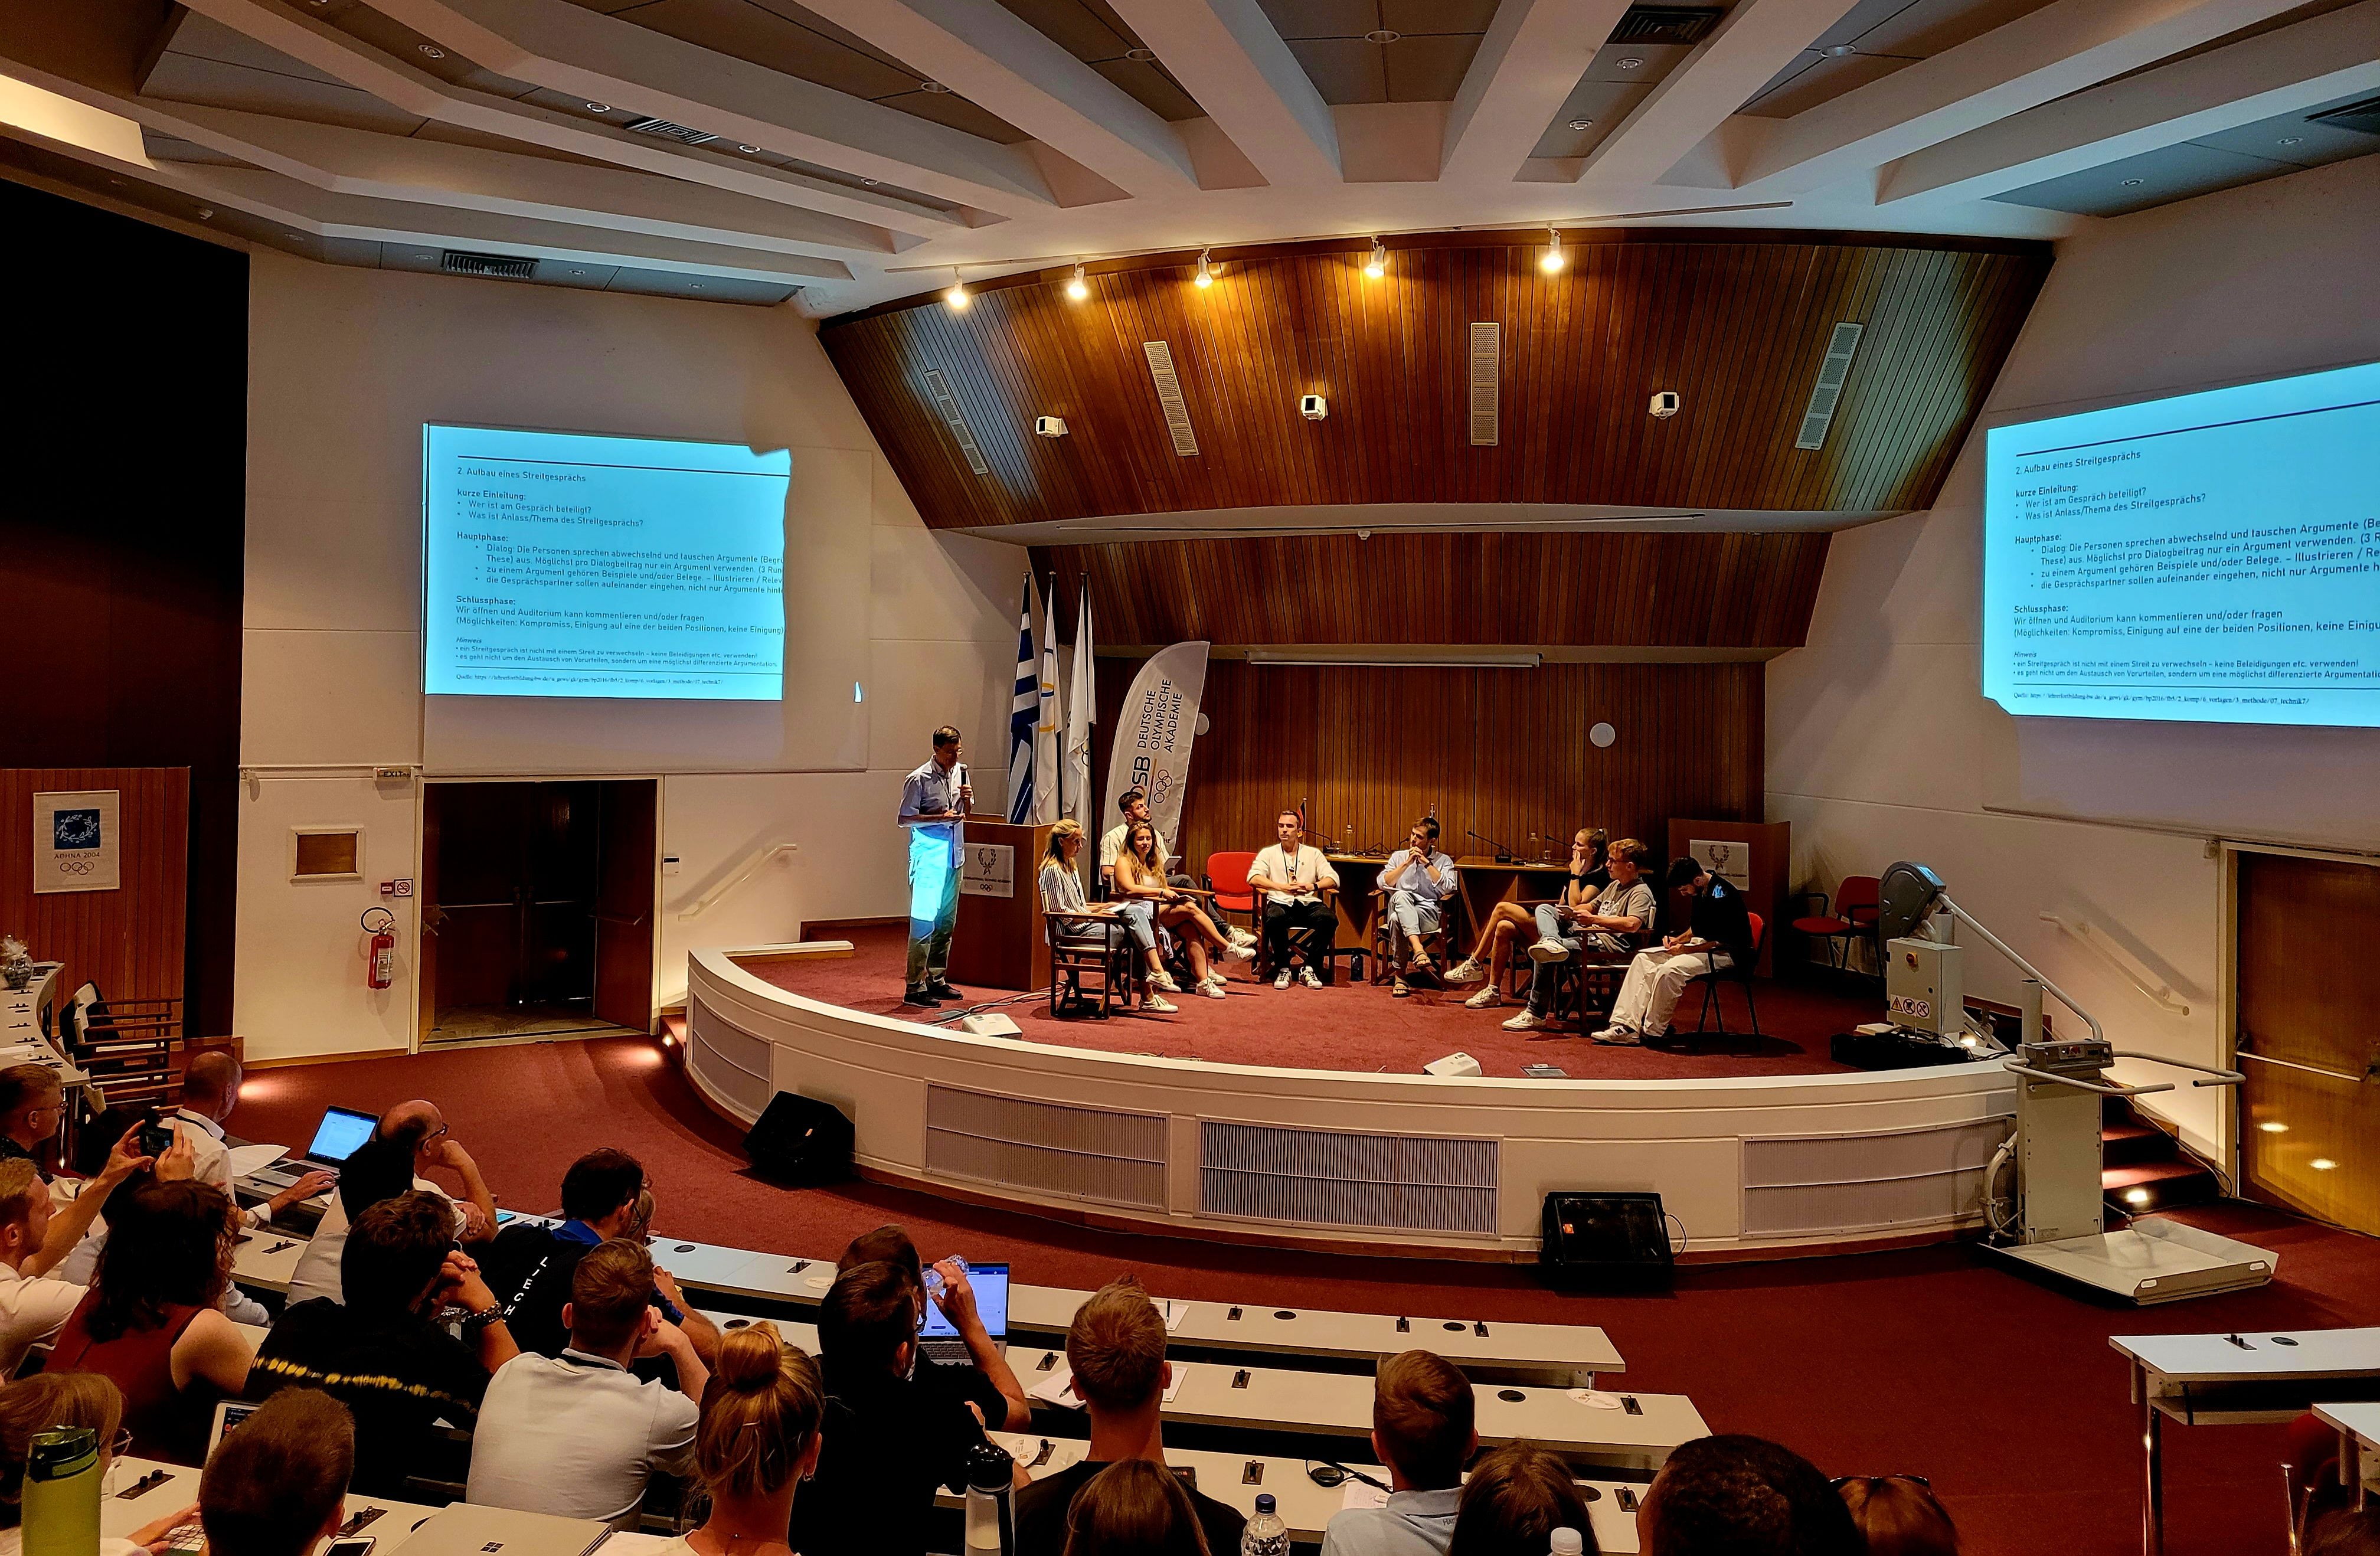 Acht Personen sitzen auf einem Podium und eine Person spricht in ein Mikrofon vor der Projektion einer Präsentationsfolie